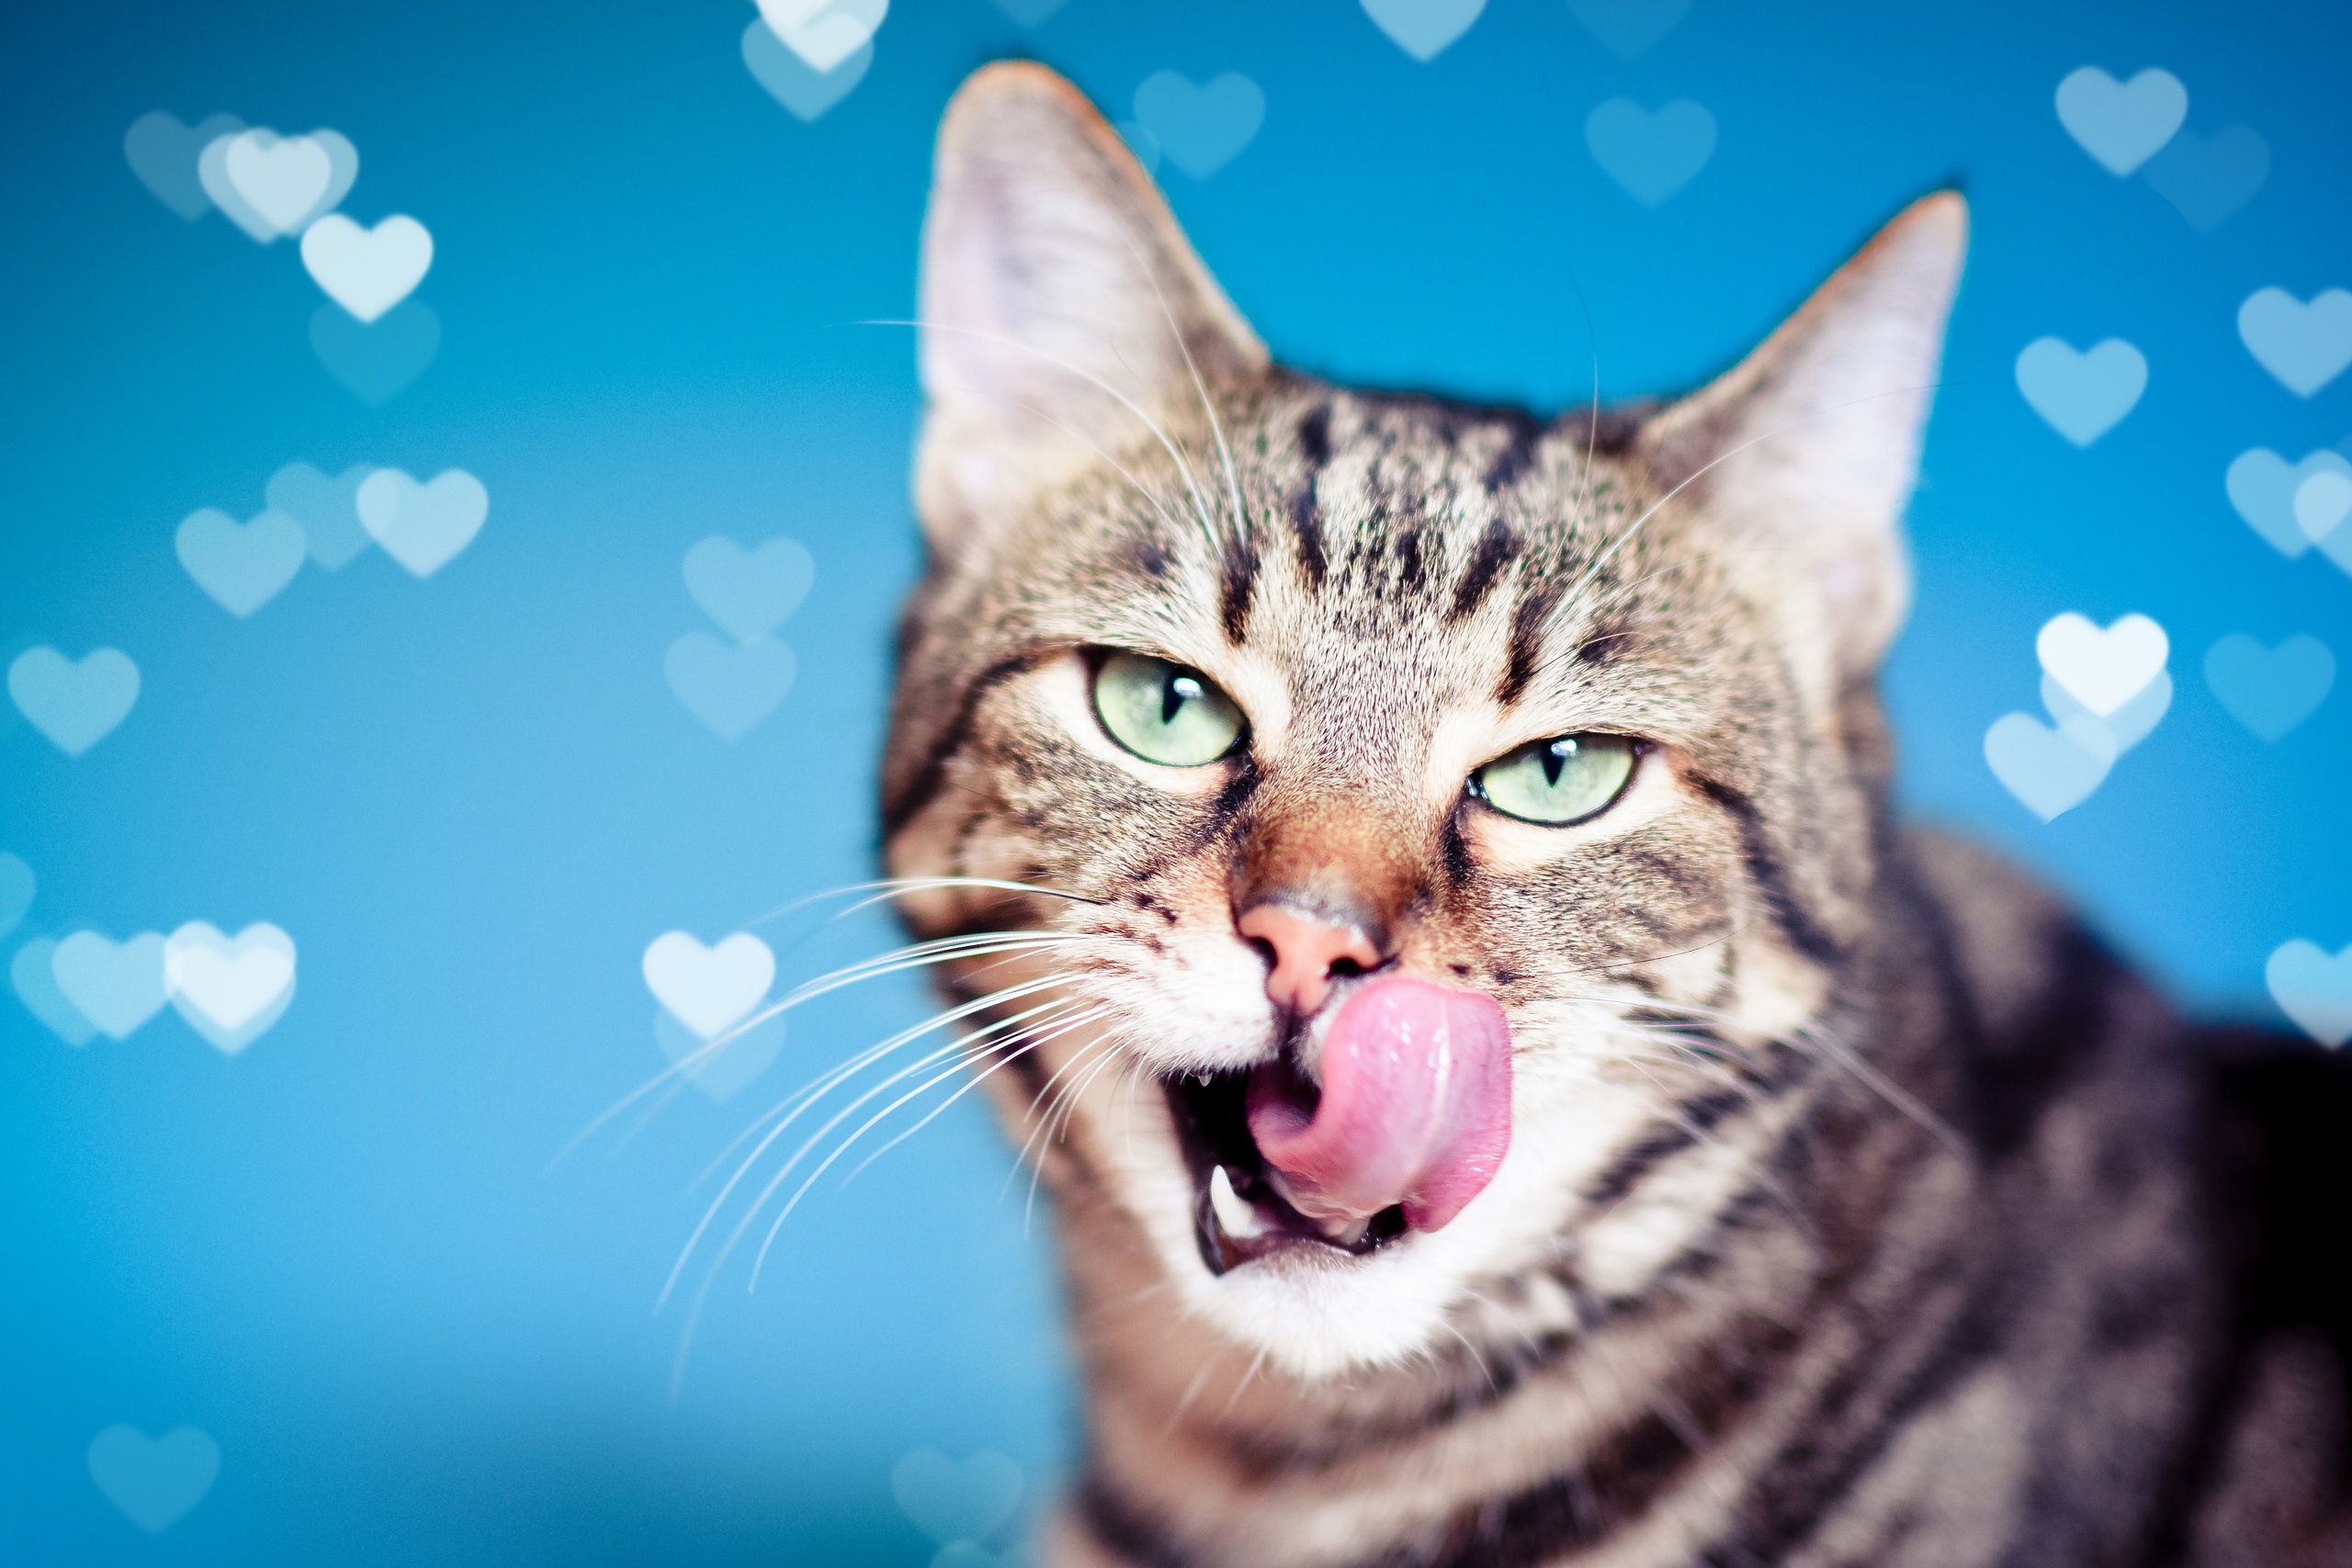 Descarga gratuita de fondo de pantalla para móvil de Animales, Gatos, Gato, Corazón, Bokeh.